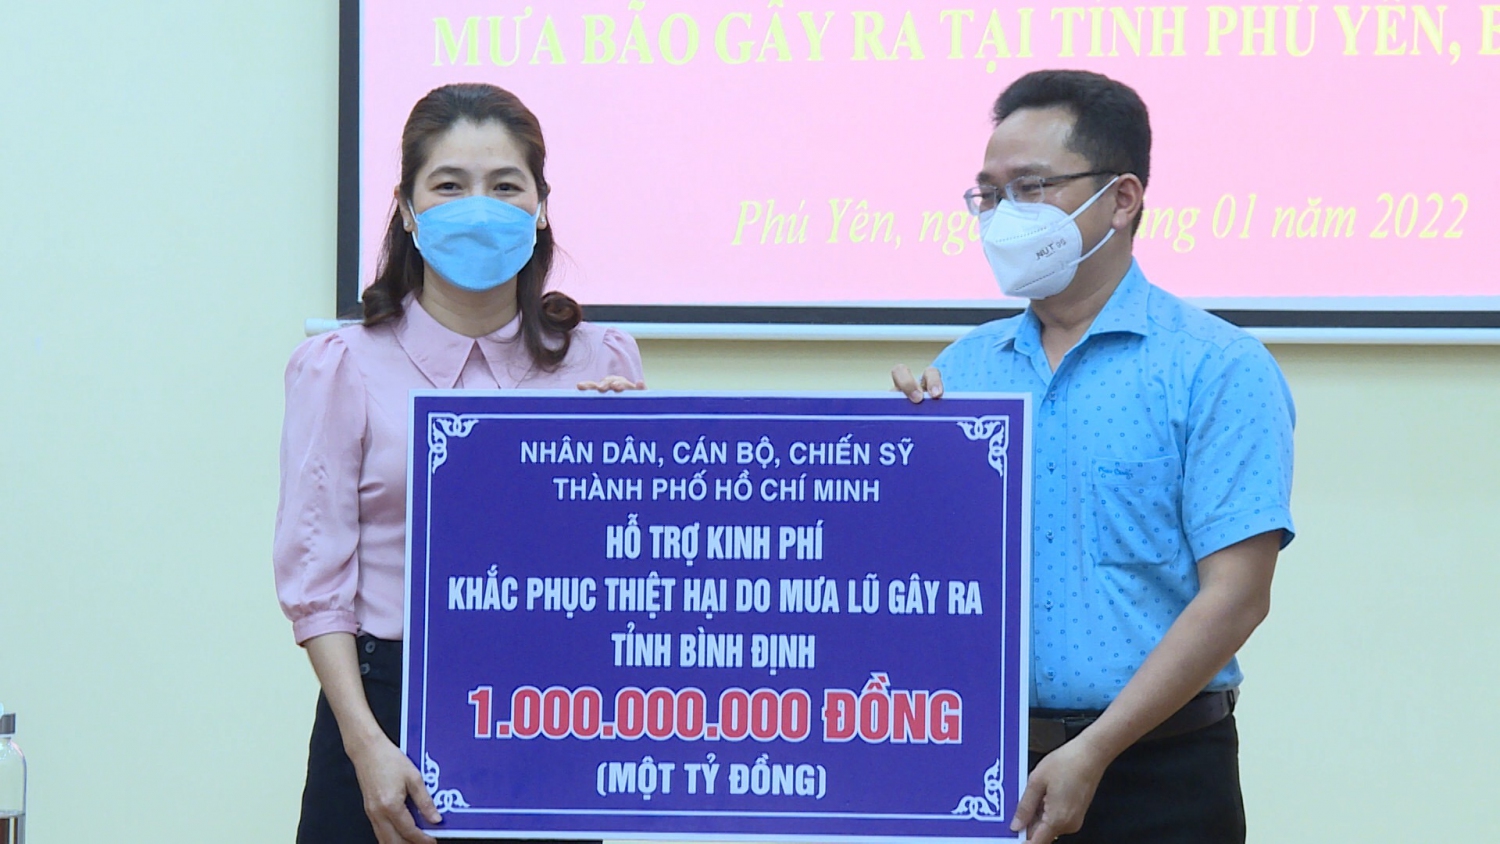 đại diện Ủy ban MTTQ Việt Nam tỉnh tiếp nhận hỗ trợ 1 tỷ đồng từ Ban "Cứu trợ" Ủy ban MTTQ Việt Nam thành phố Hồ Chí Minh